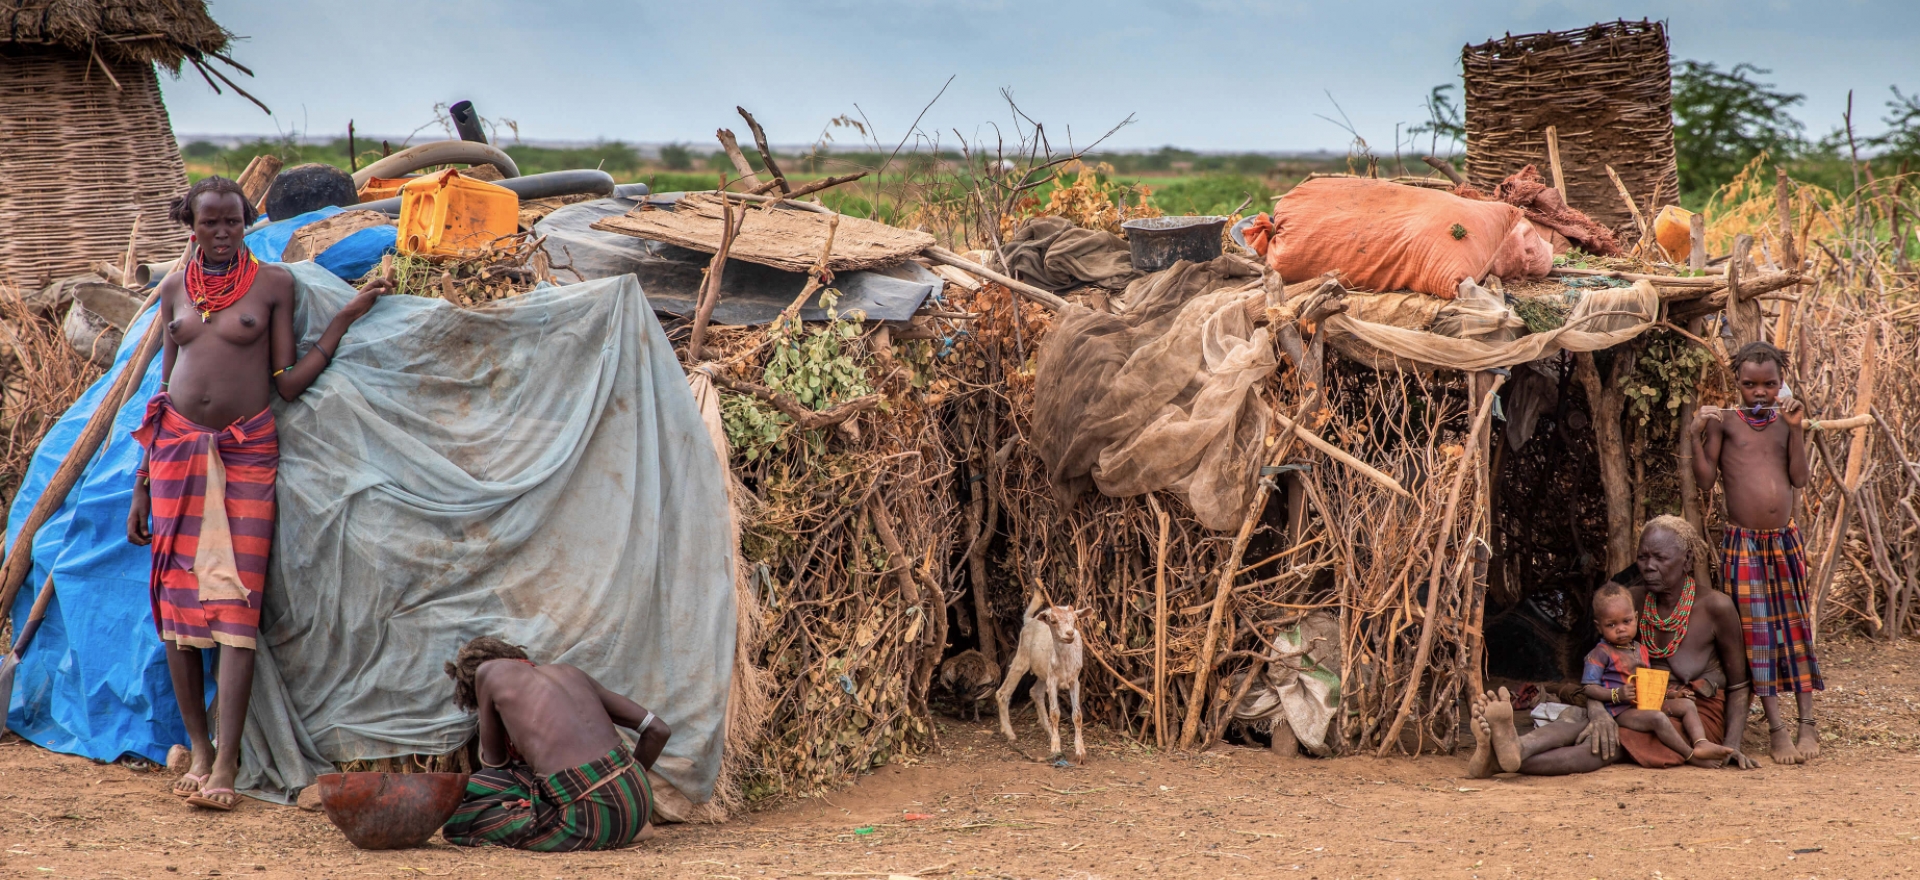 Ve vesnici Dassanech, jižní Etiopie - Planeta lidí